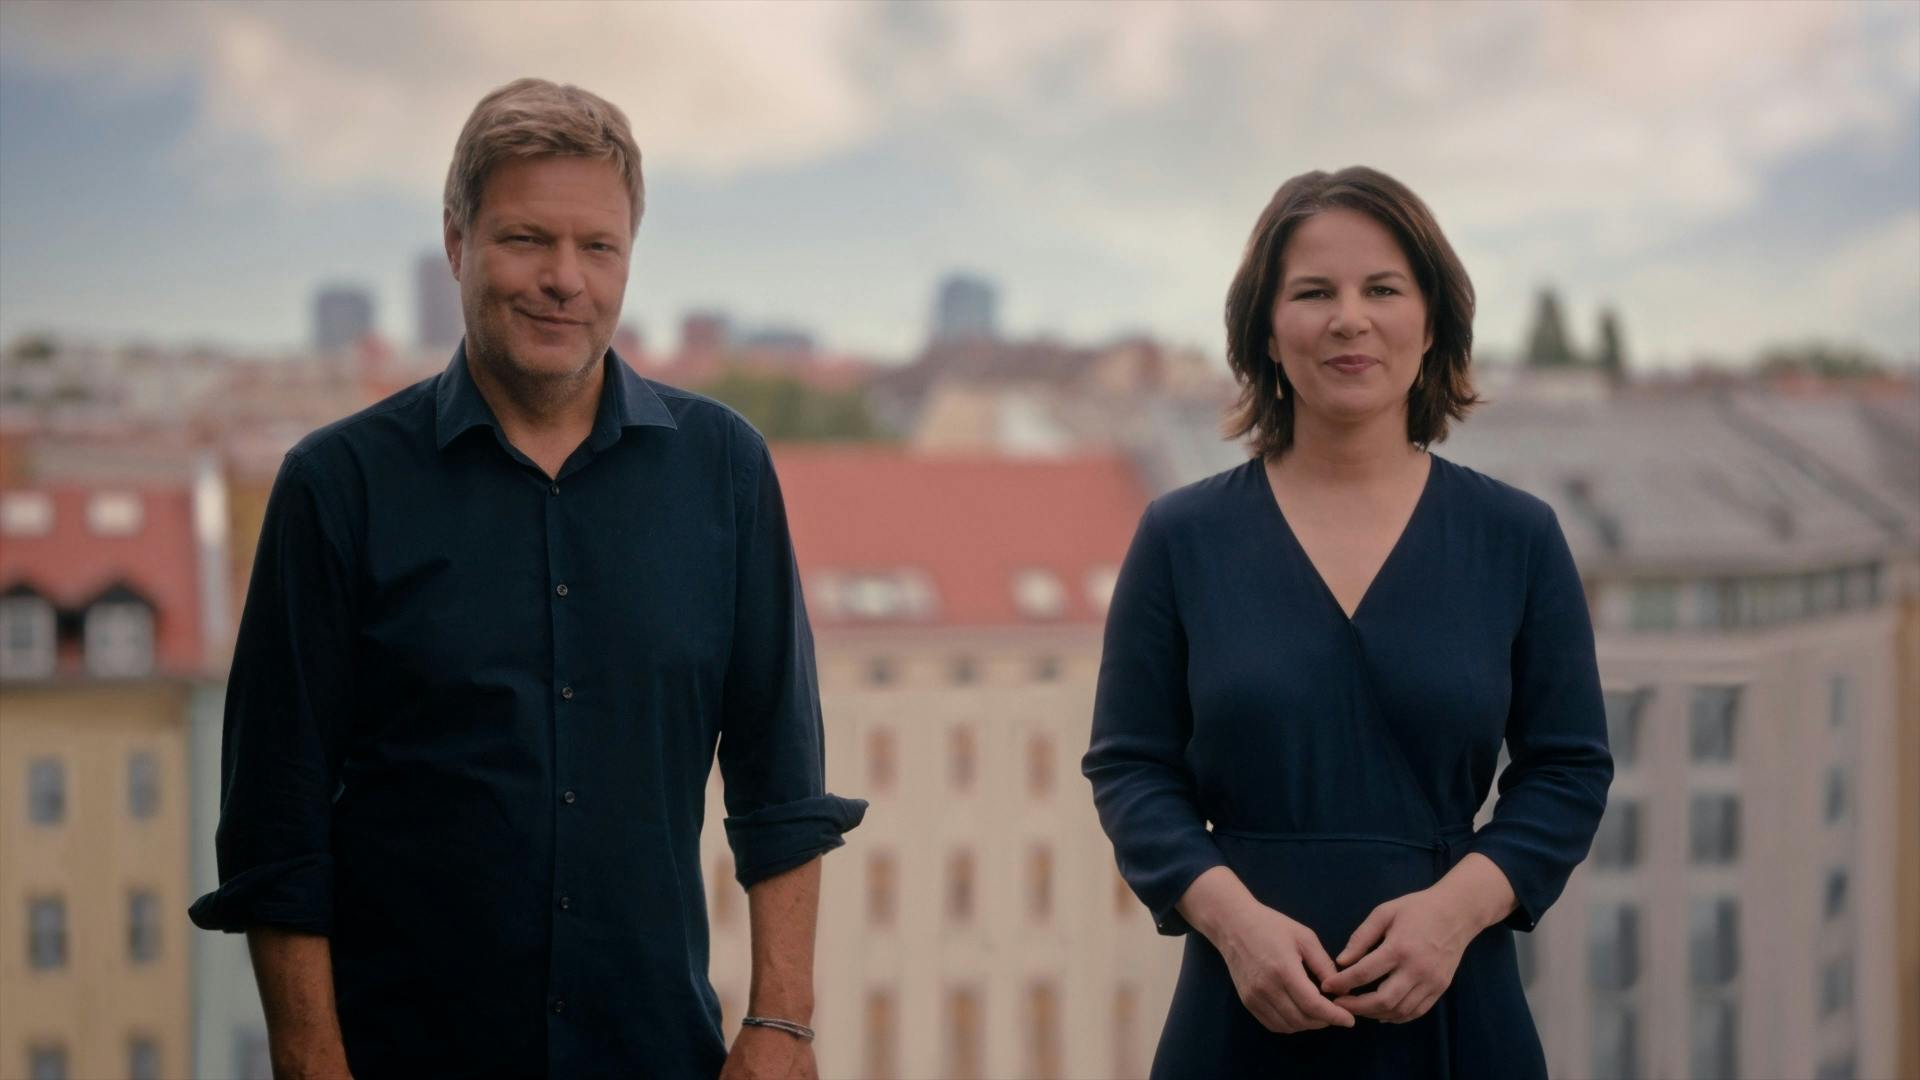 Robert Habeck und Annalena Baerbock stehen vor Häuserfassaden und lächeln in die Kamera.